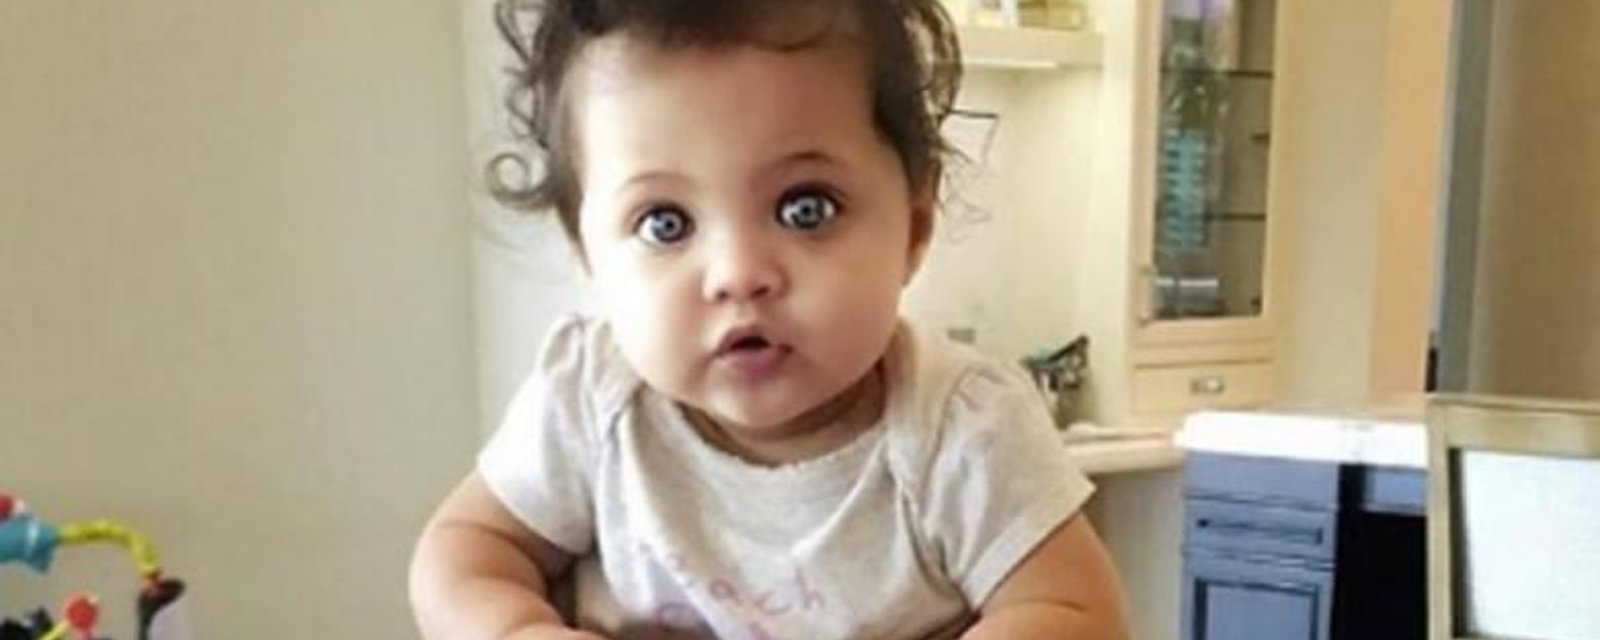 Un célèbre acteur publie une photo à faire craquer de sa fillette.